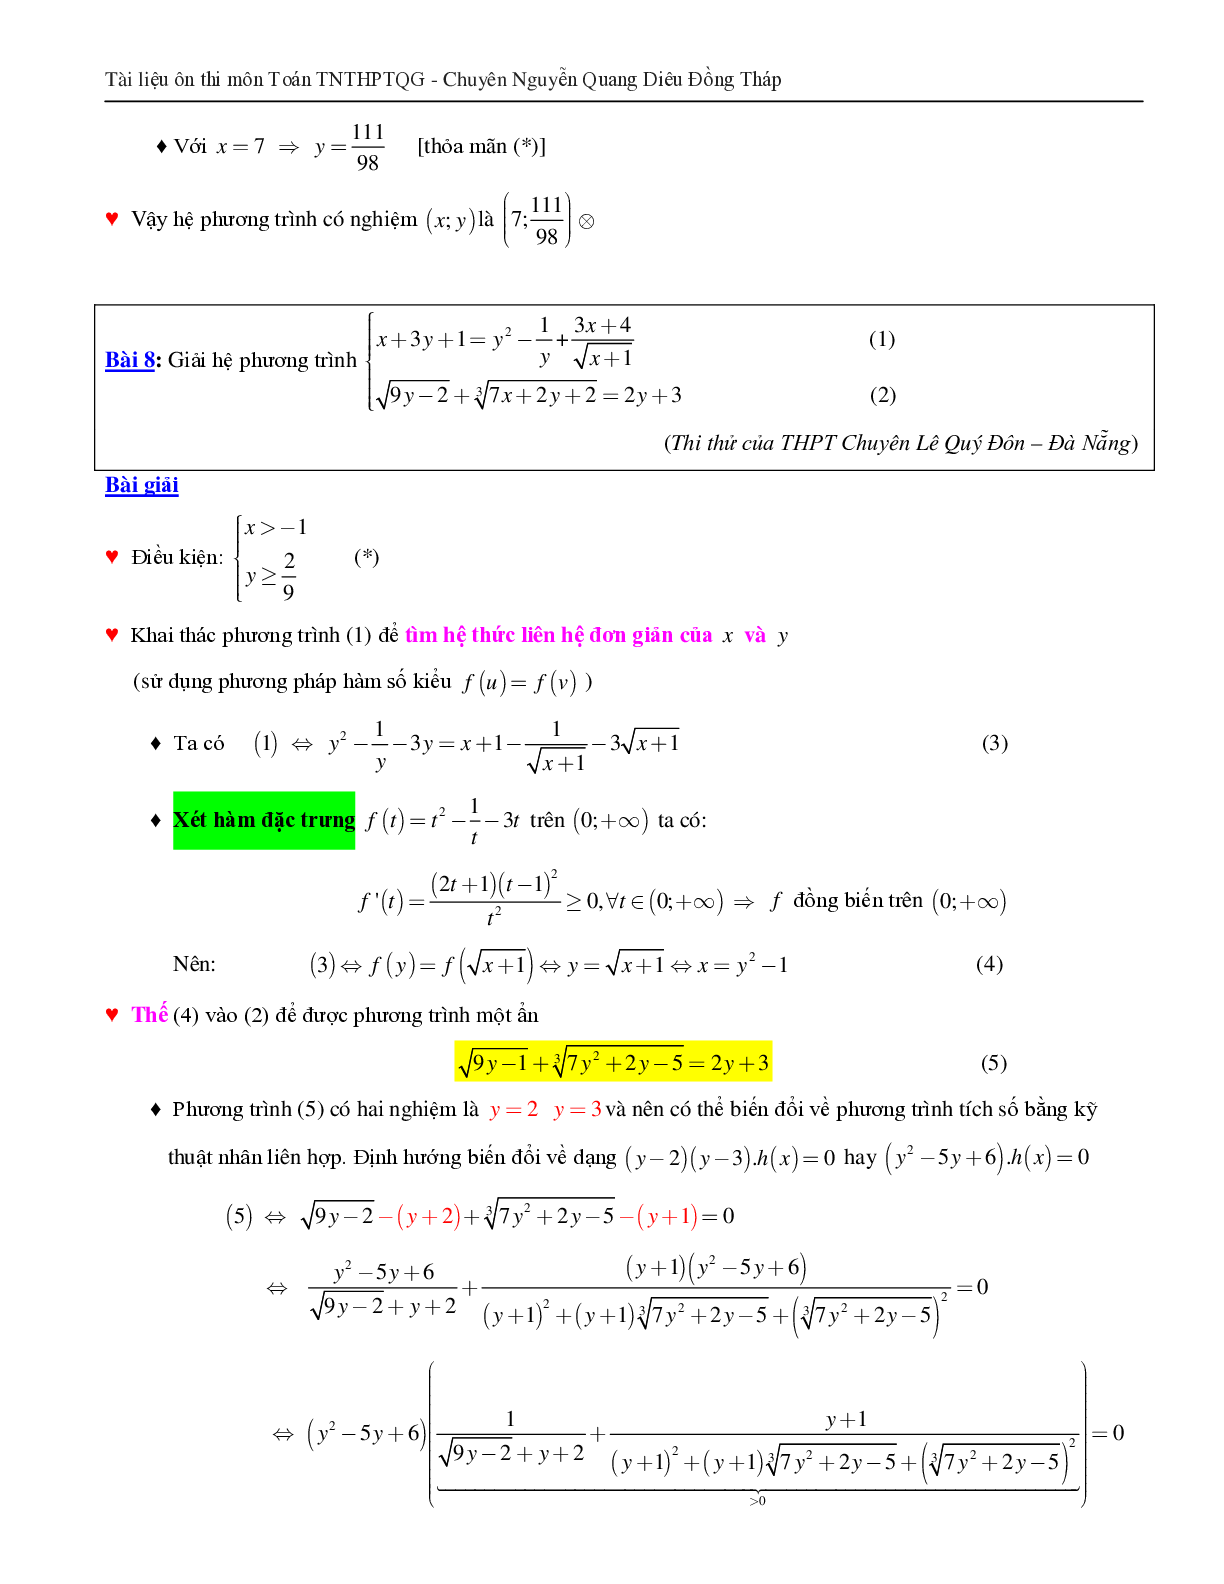 Giải hệ phương trình bằng phương pháp hàm số (trang 10)